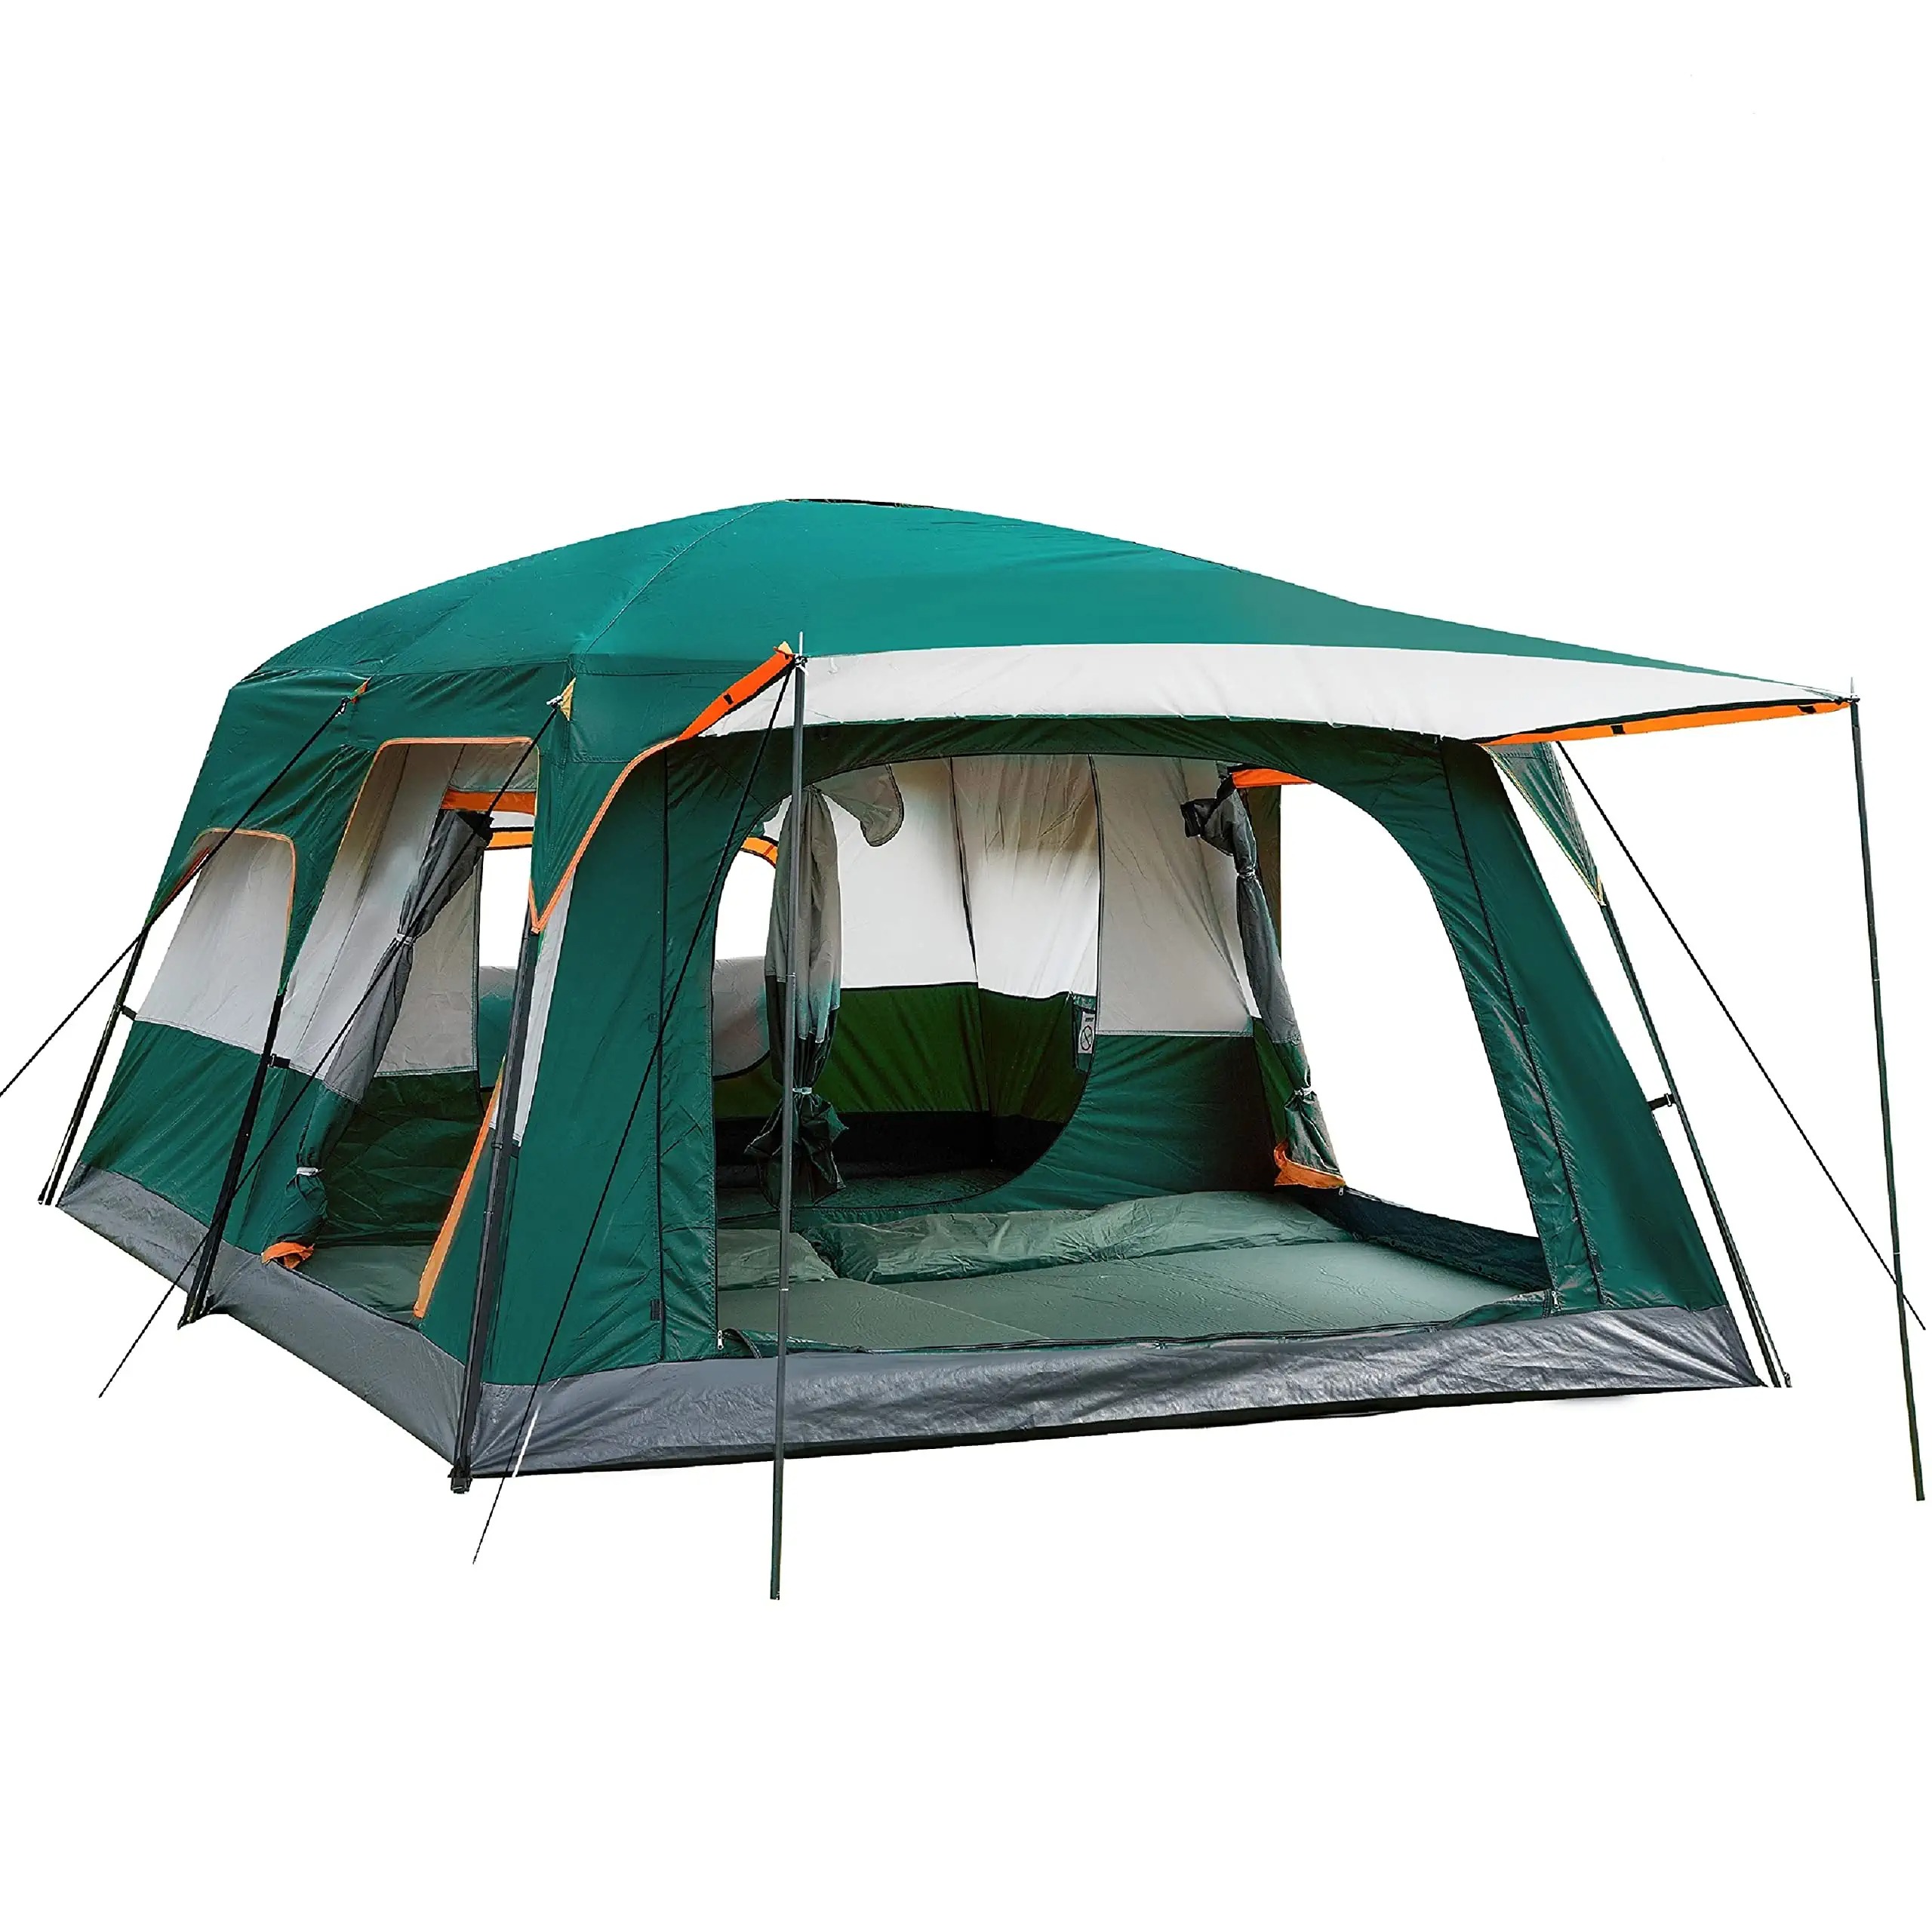 يمكن تخصيص خيمة التخييم الأسرة المقصورة في الهواء الطلق